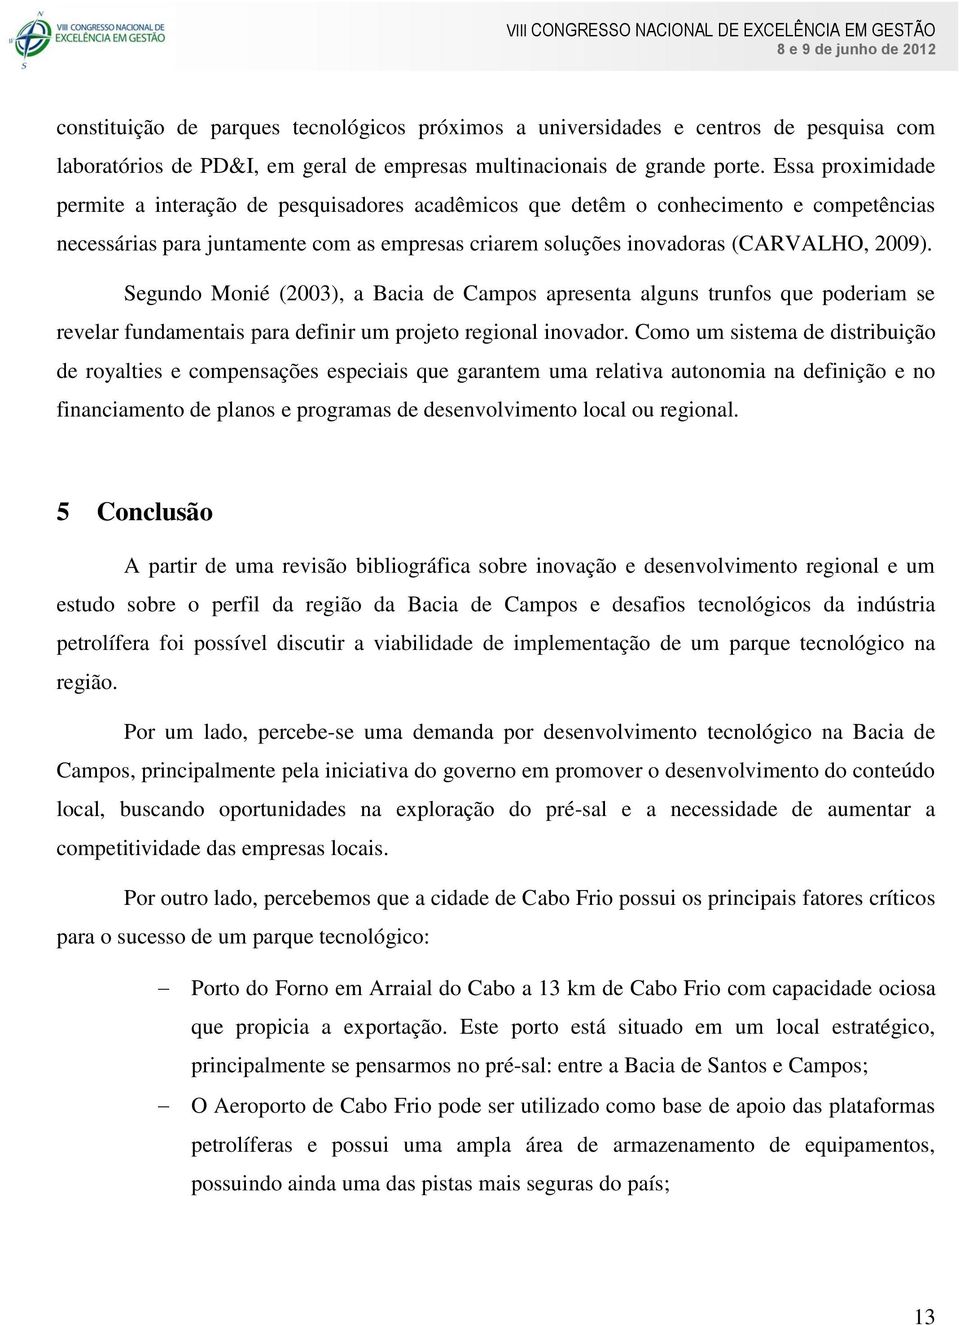 Segundo Monié (2003), a Bacia de Campos apresenta alguns trunfos que poderiam se revelar fundamentais para definir um projeto regional inovador.